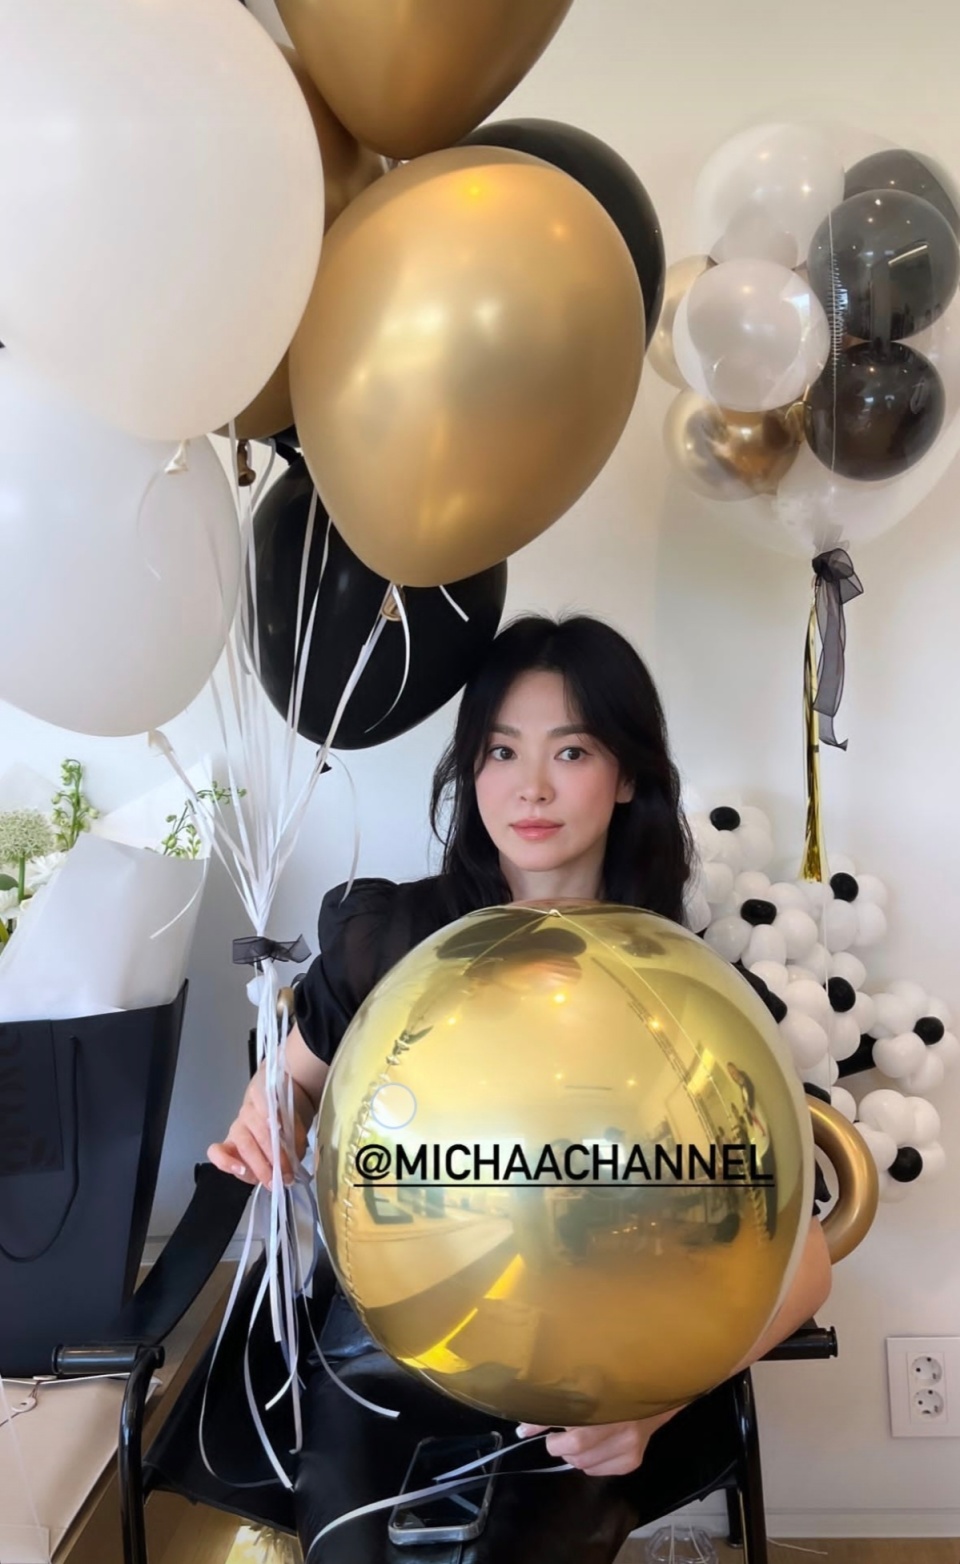 4日,演员宋慧乔在社交平台上分享的照片中,她手握几个大气球,笑容灿烂